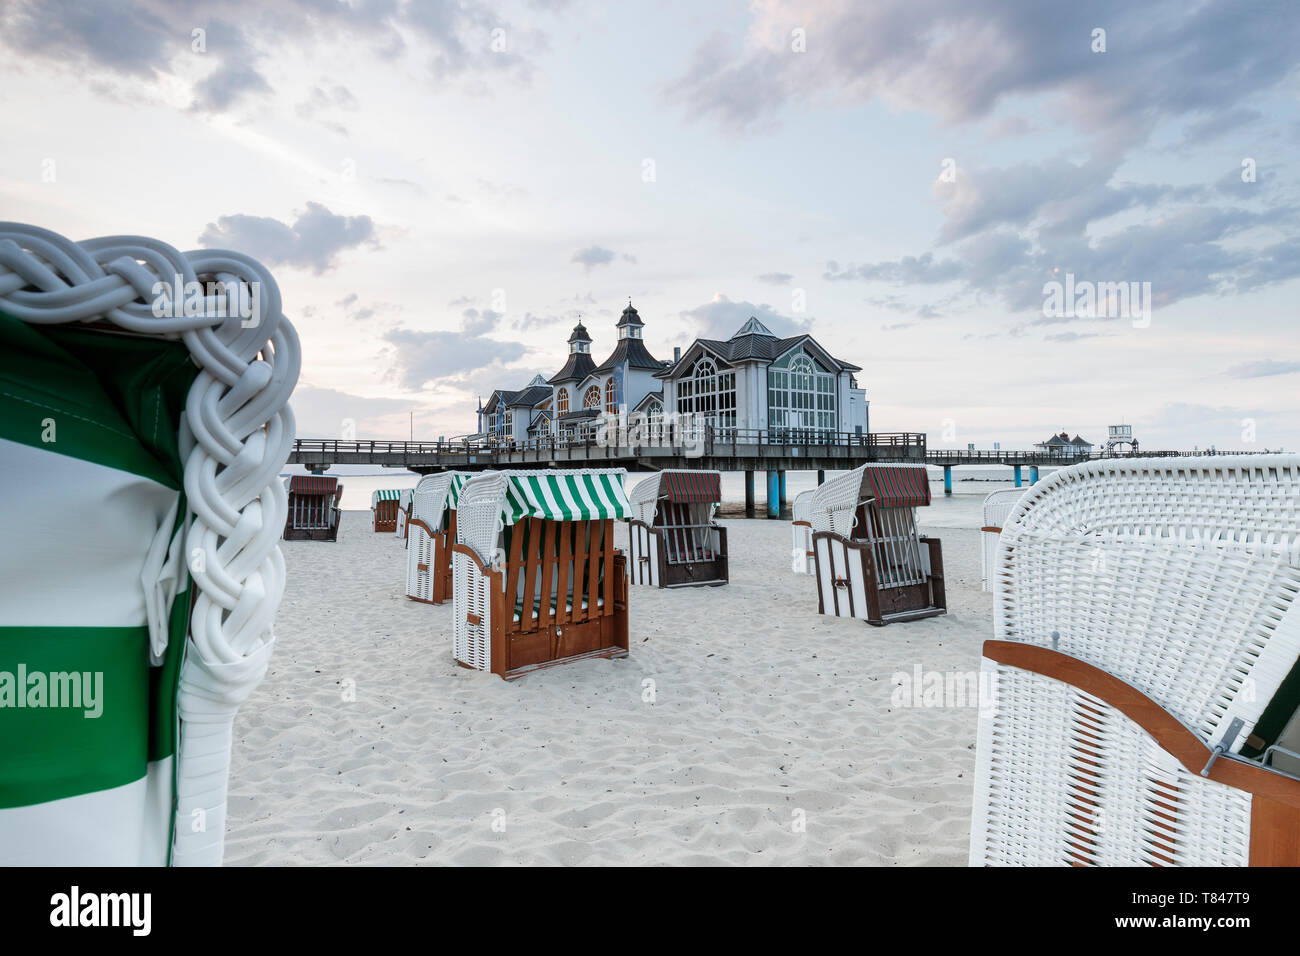 Sillas de playa y muelle tradicional, Sellin, Rugen, Mecklenburg-Vorpommern, Alemania Foto de stock